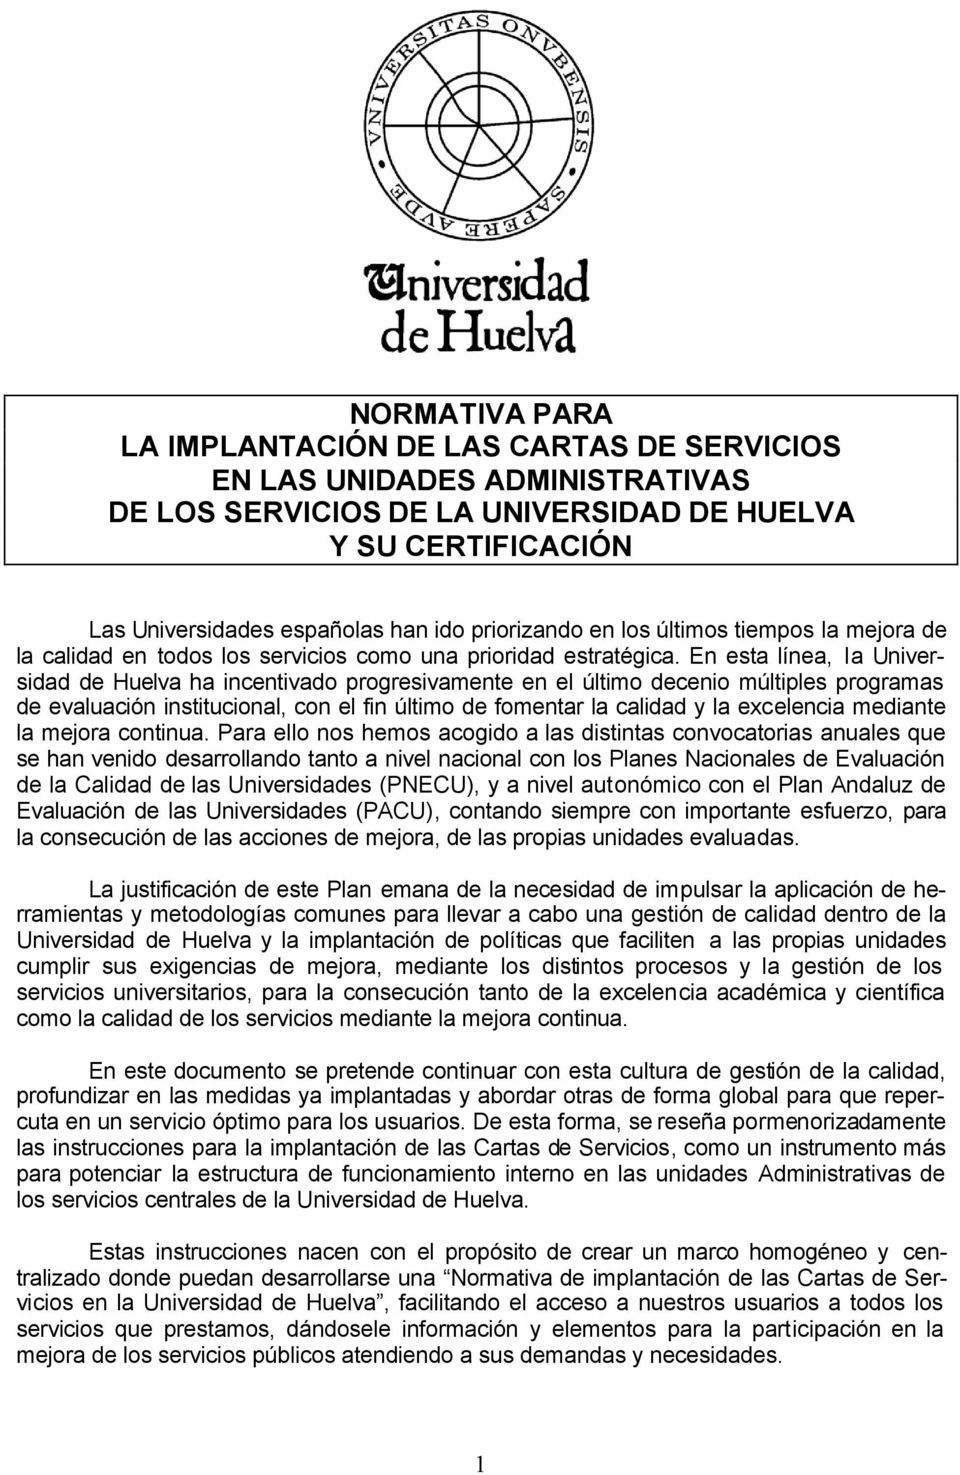 En esta línea, la Universidad de Huelva ha incentivado progresivamente en el último decenio múltiples programas de evaluación institucional, con el fin último de fomentar la calidad y la excelencia